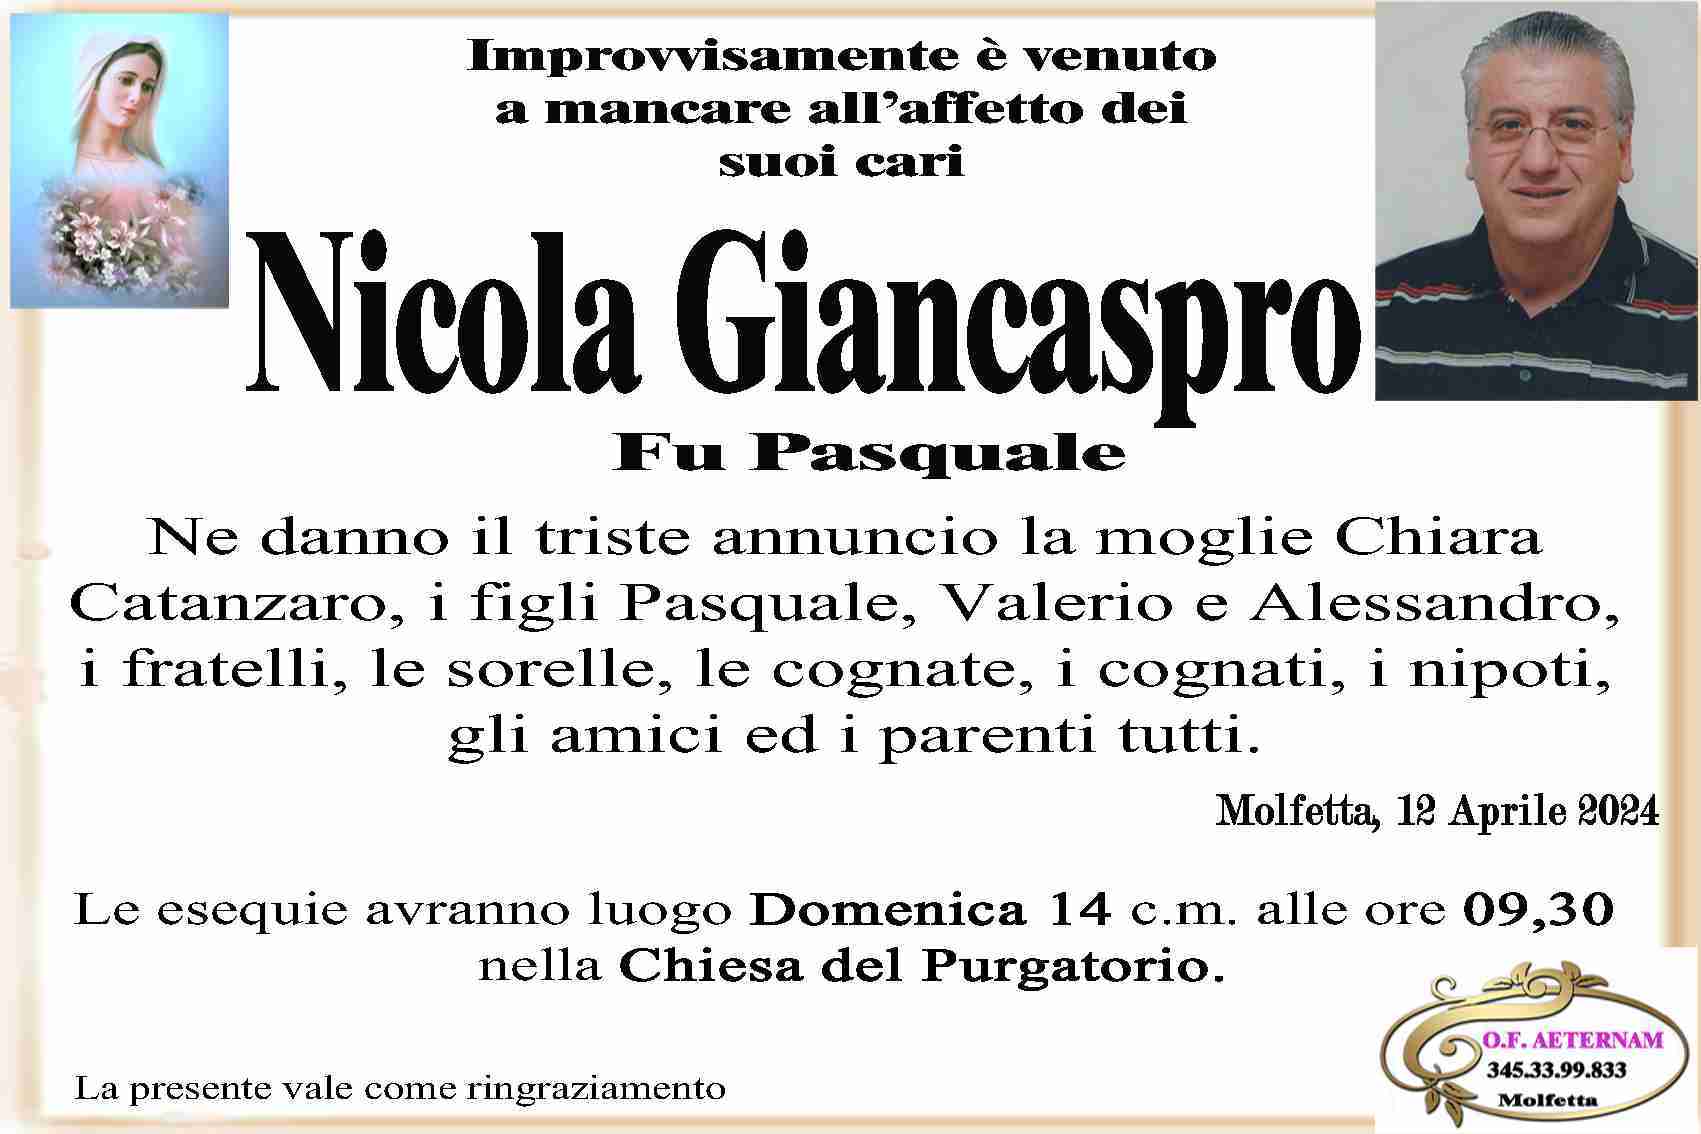 Nicola Giancaspro